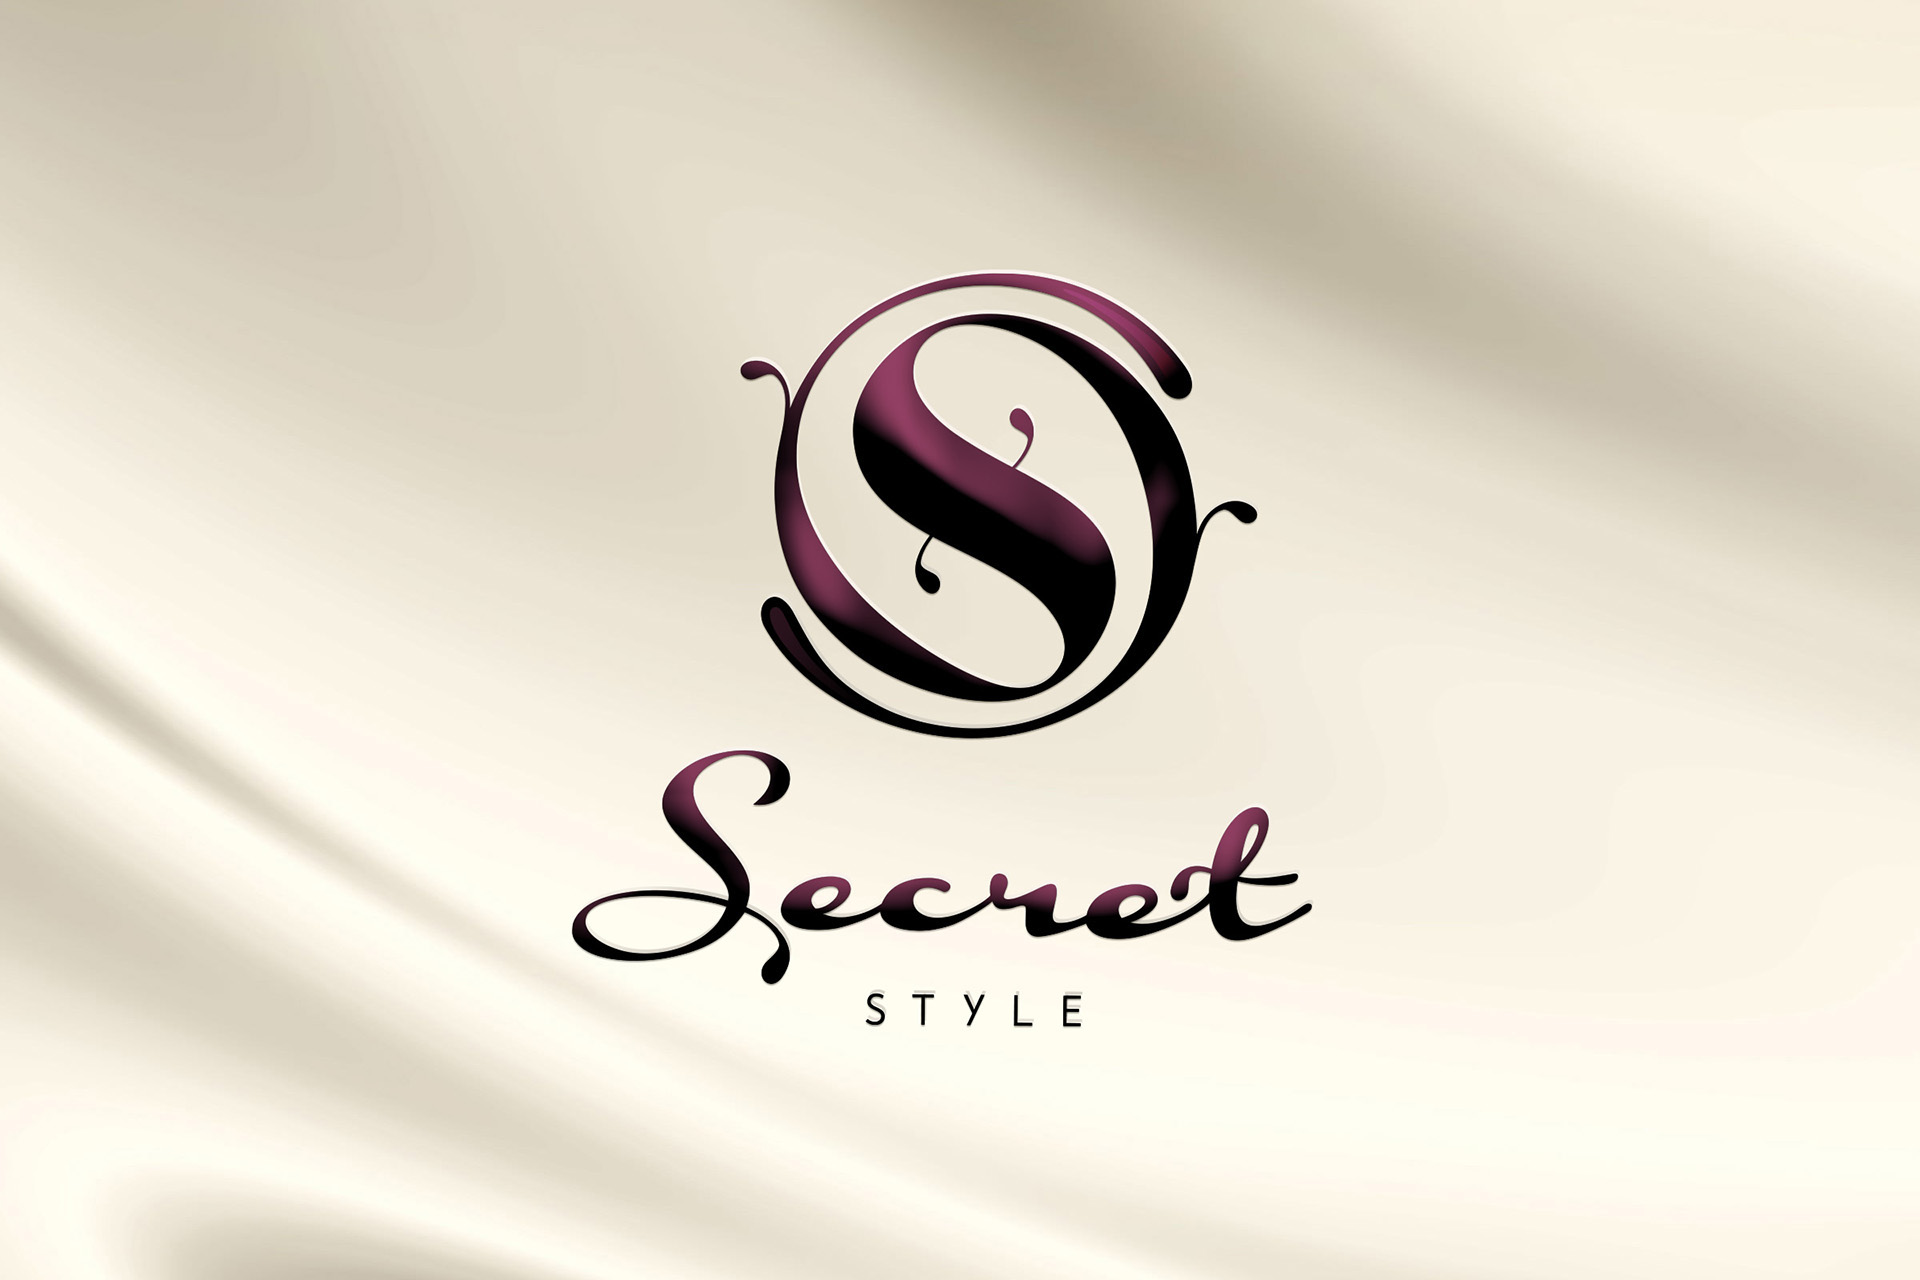 Free High-Quality Victorias Secret Logo for Creative Design